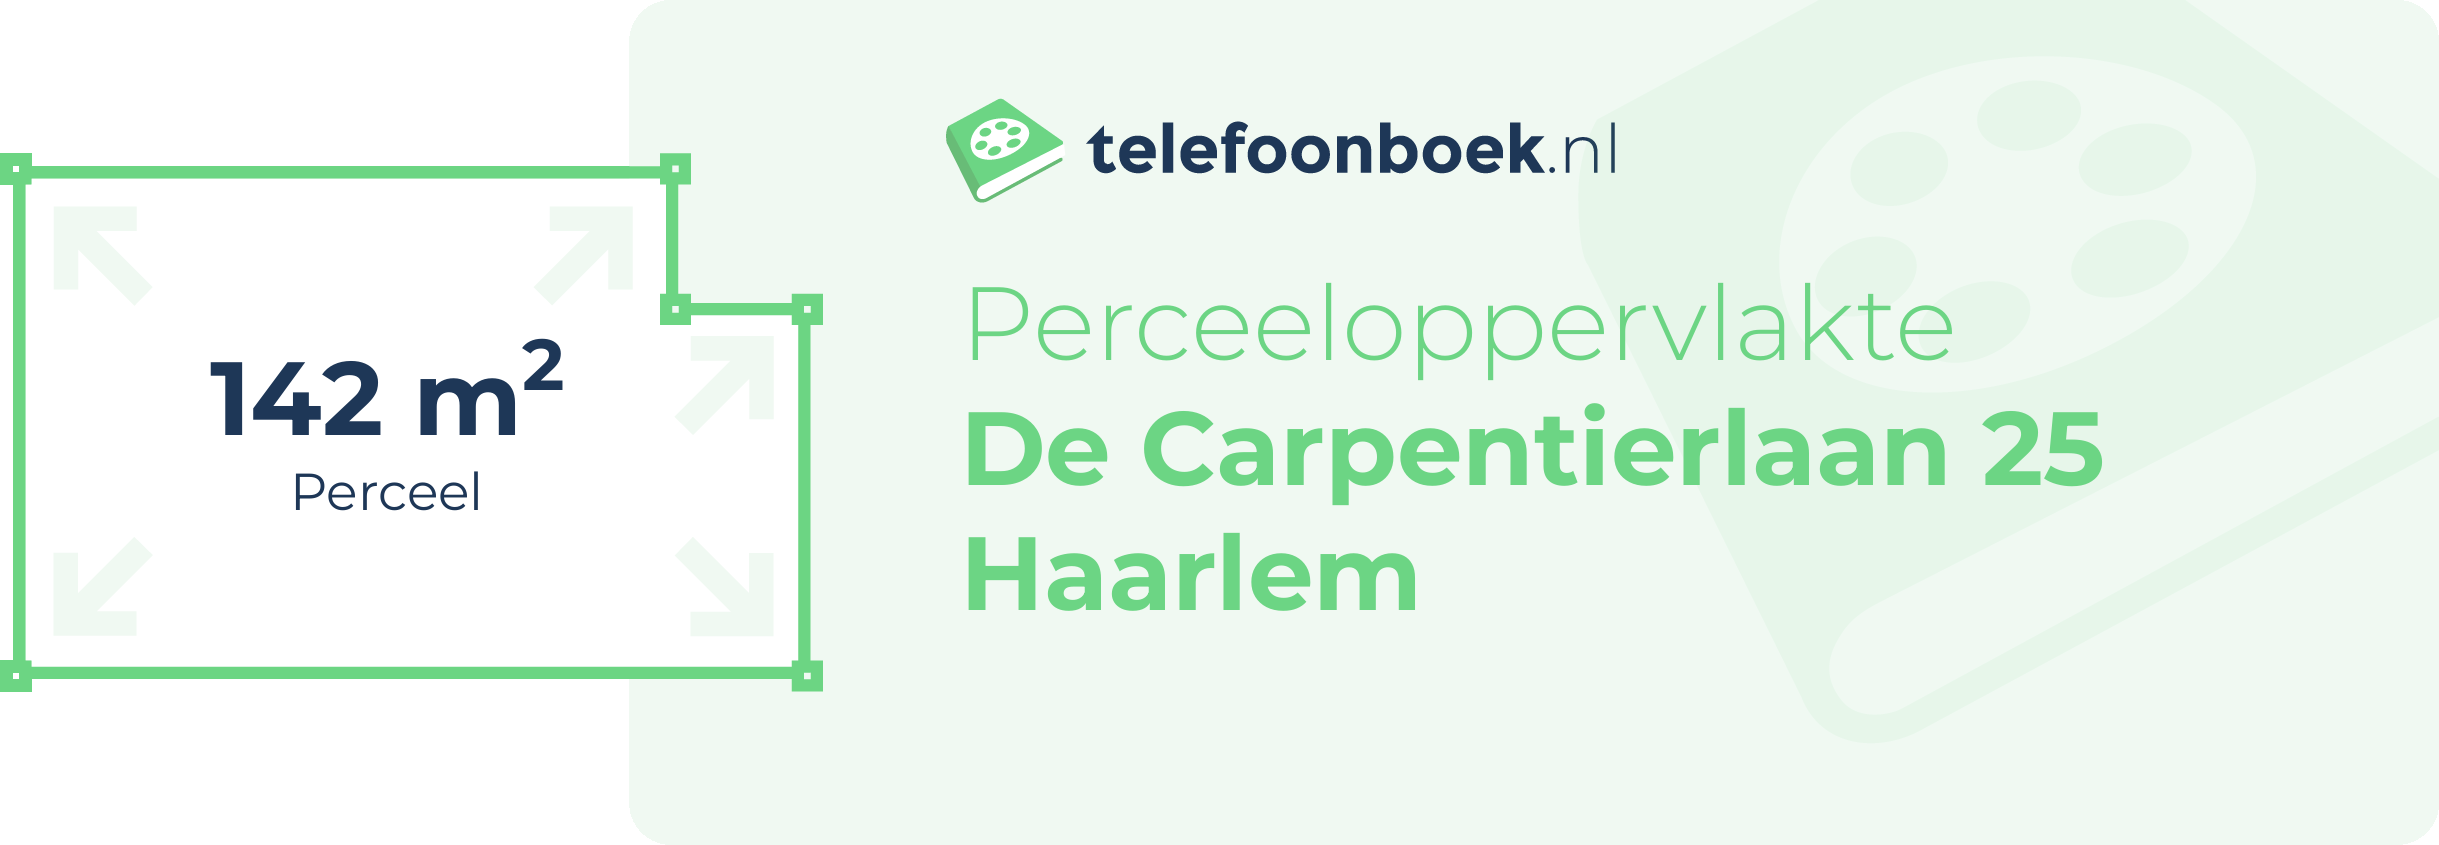 Perceeloppervlakte De Carpentierlaan 25 Haarlem